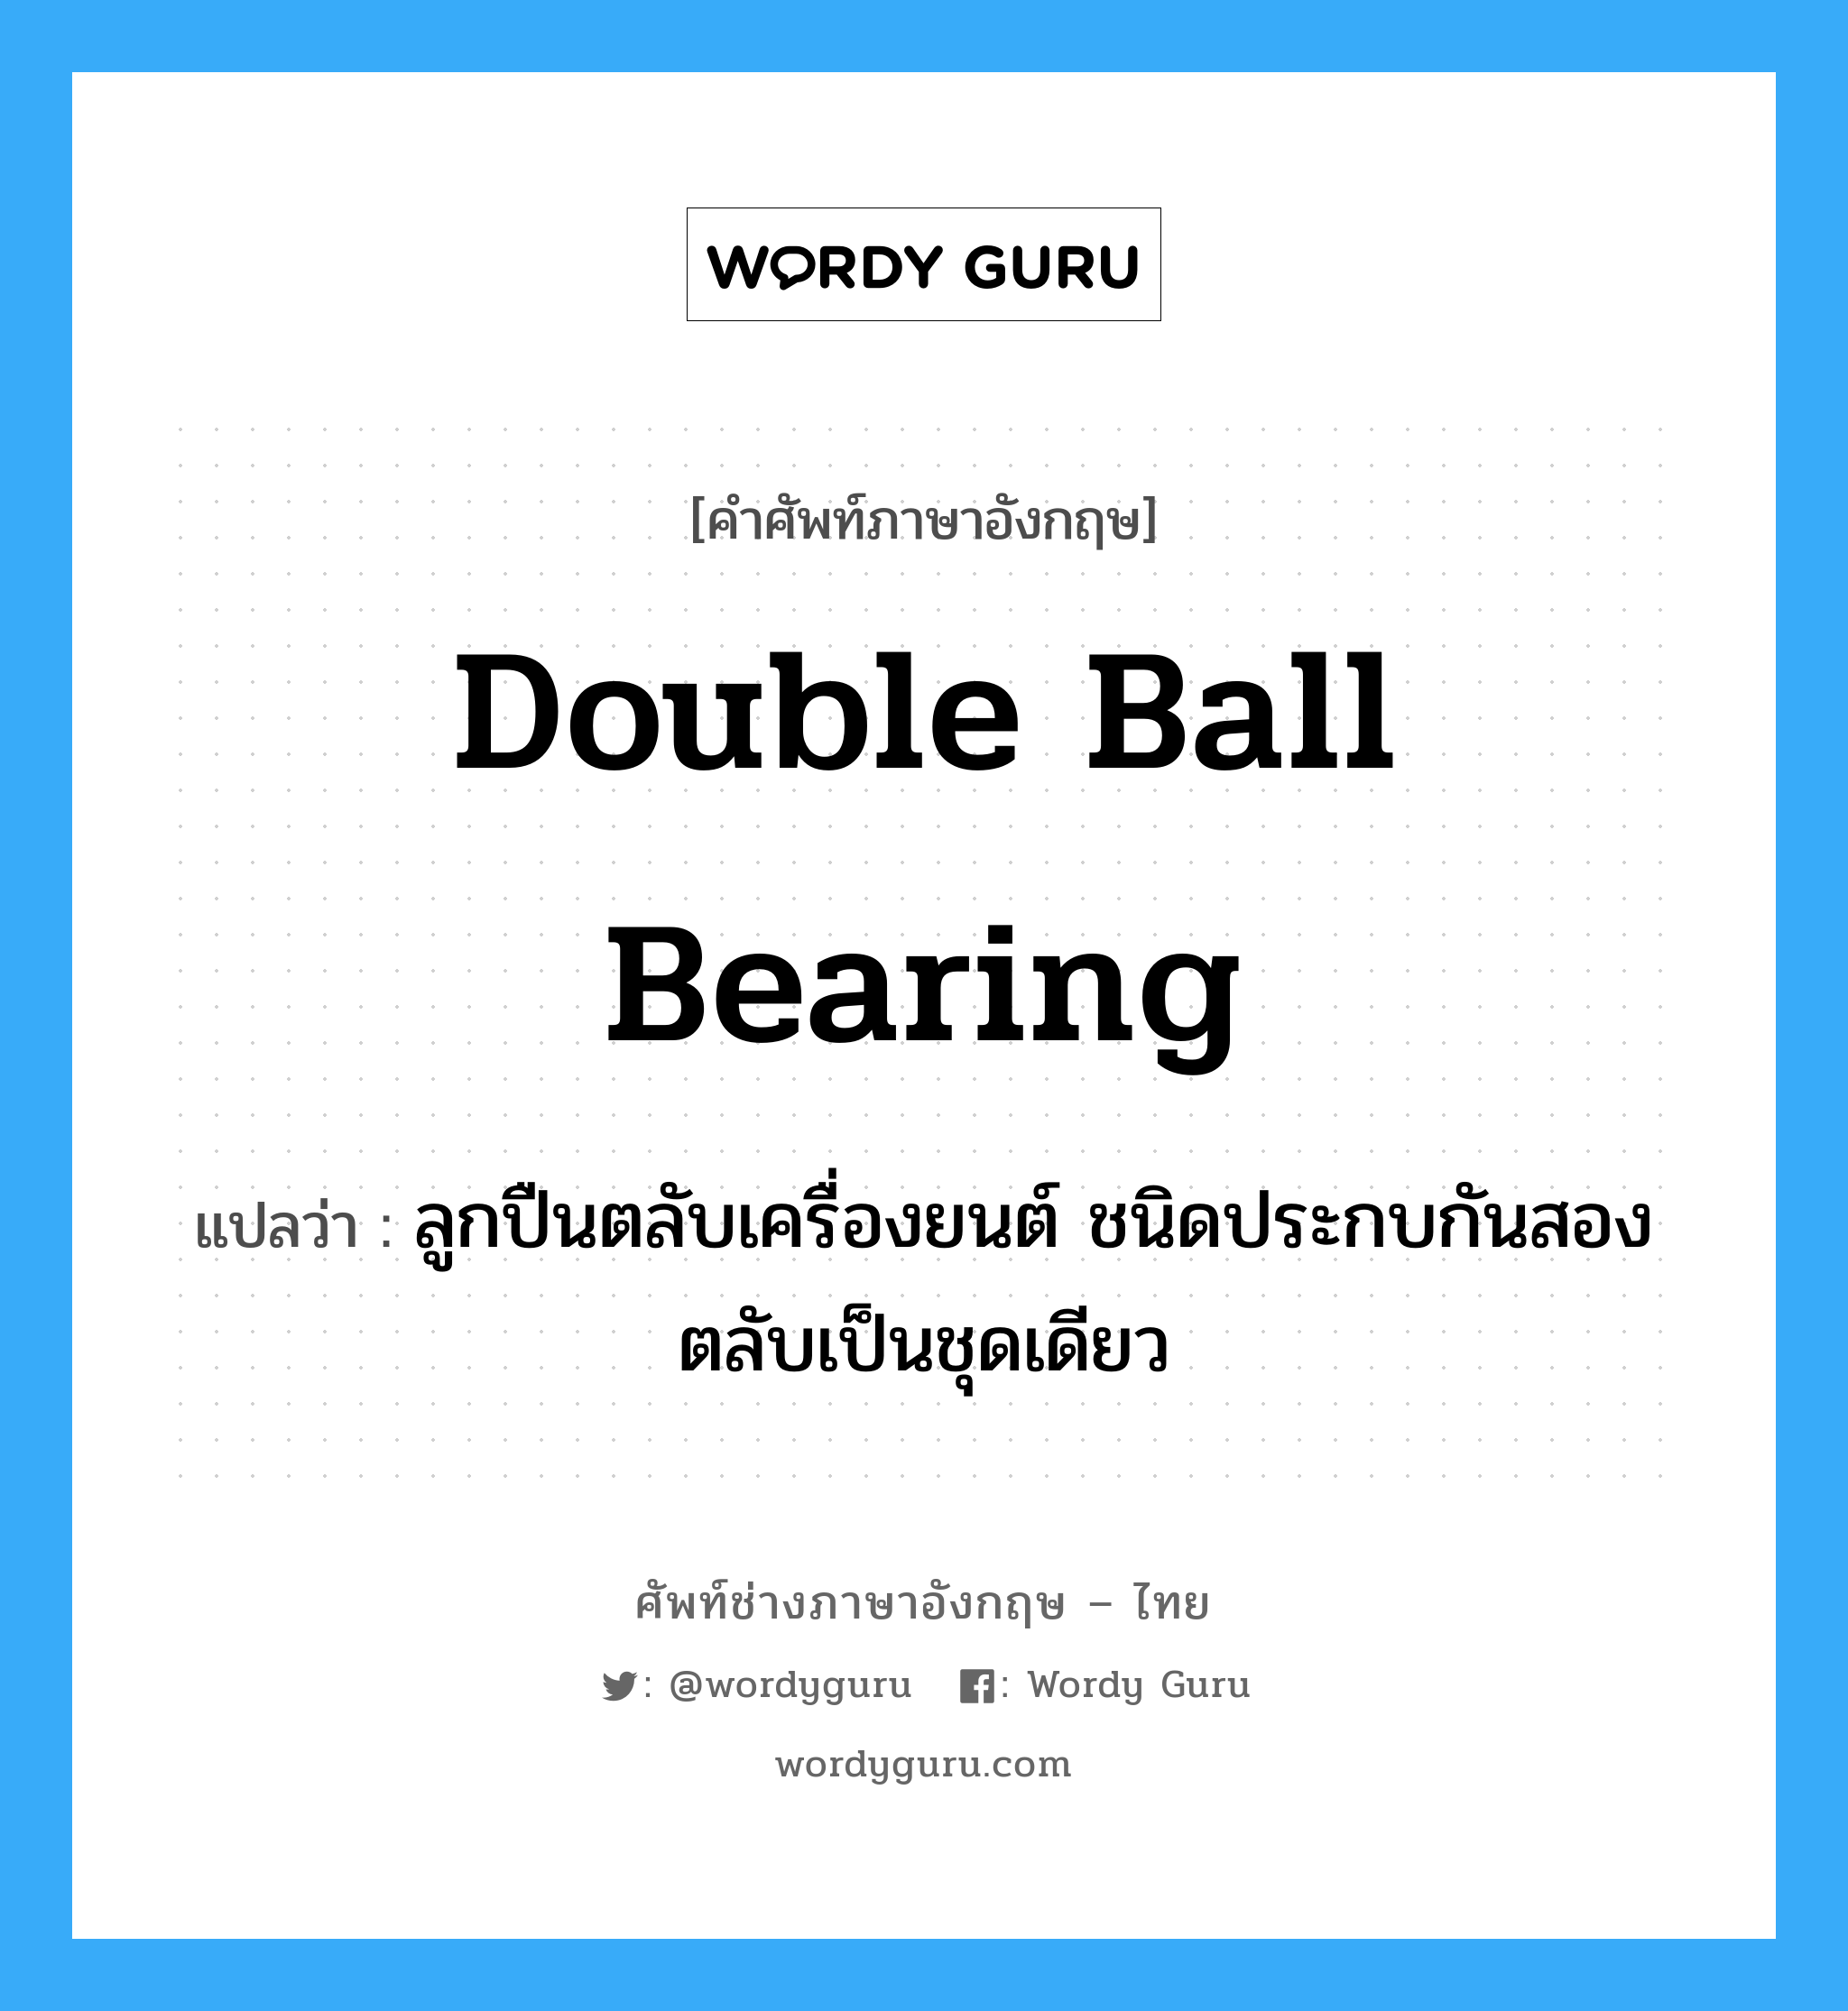 double ball bearing แปลว่า?, คำศัพท์ช่างภาษาอังกฤษ - ไทย double ball bearing คำศัพท์ภาษาอังกฤษ double ball bearing แปลว่า ลูกปืนตลับเครื่องยนต์ ชนิดประกบกันสองตลับเป็นชุดเดียว